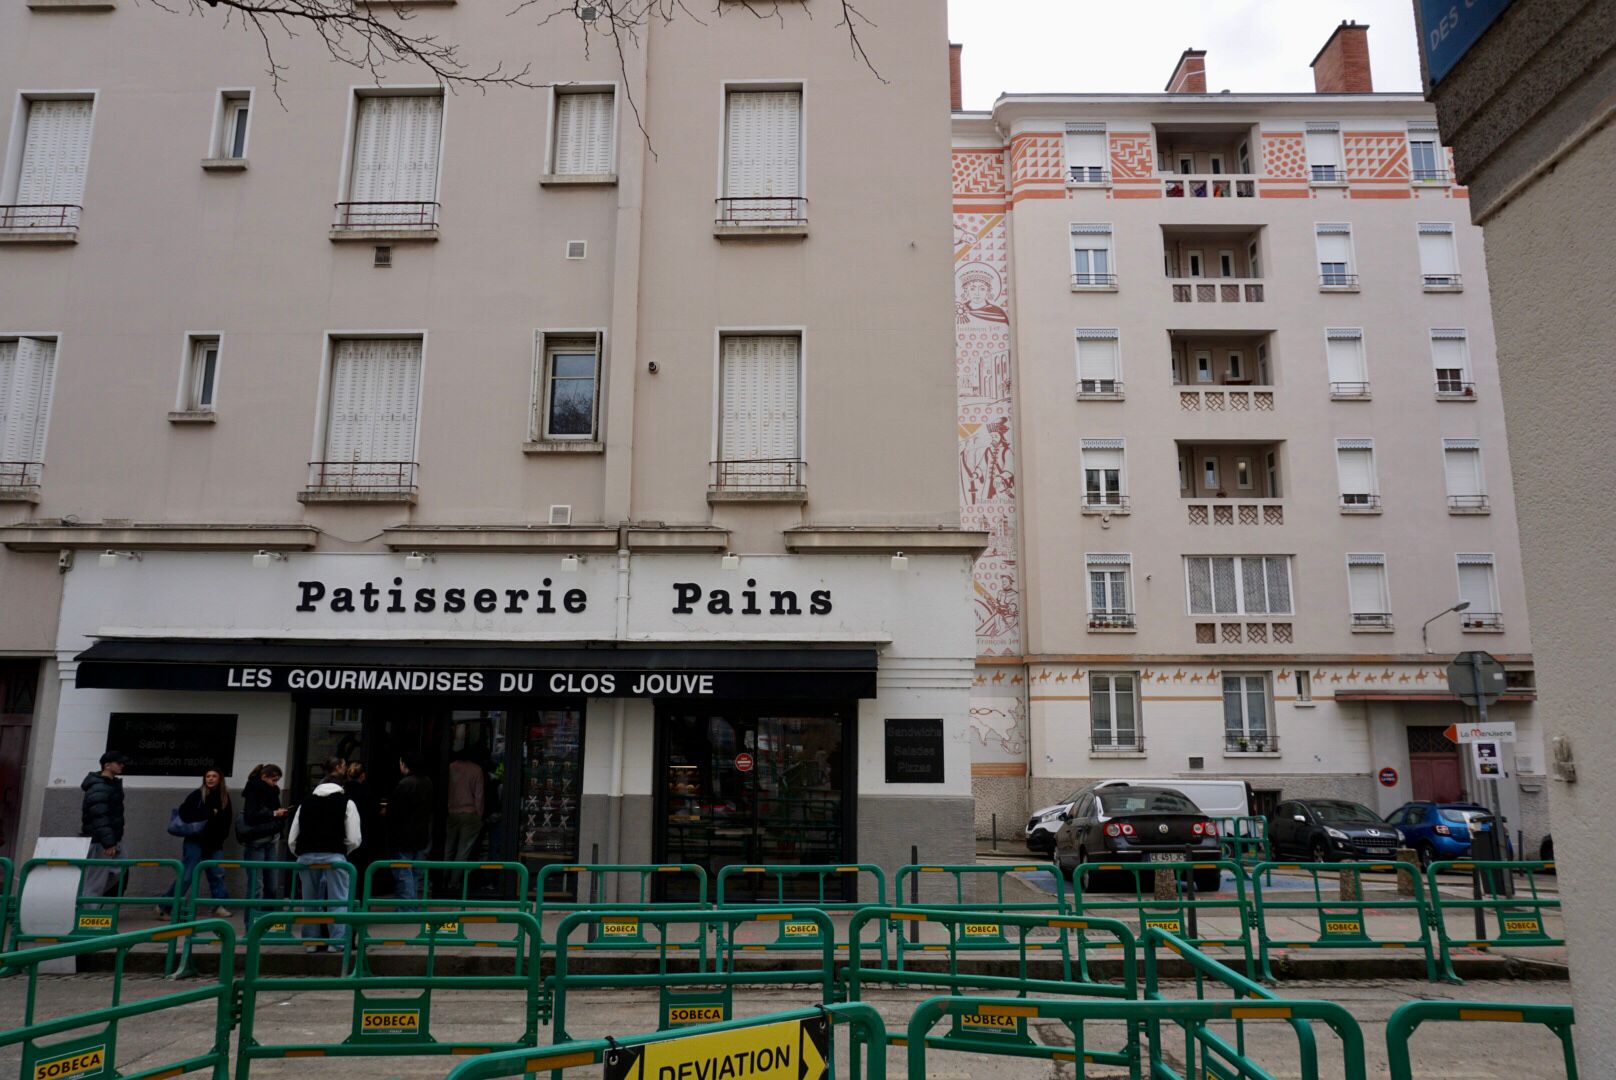 Mehrstöckige Wohngebäude mit Erdgeschoss-Läden, darunter eine Bäckerei mit der Aufschrift "Patisserie Pains", hinter einer grünen Absperrung